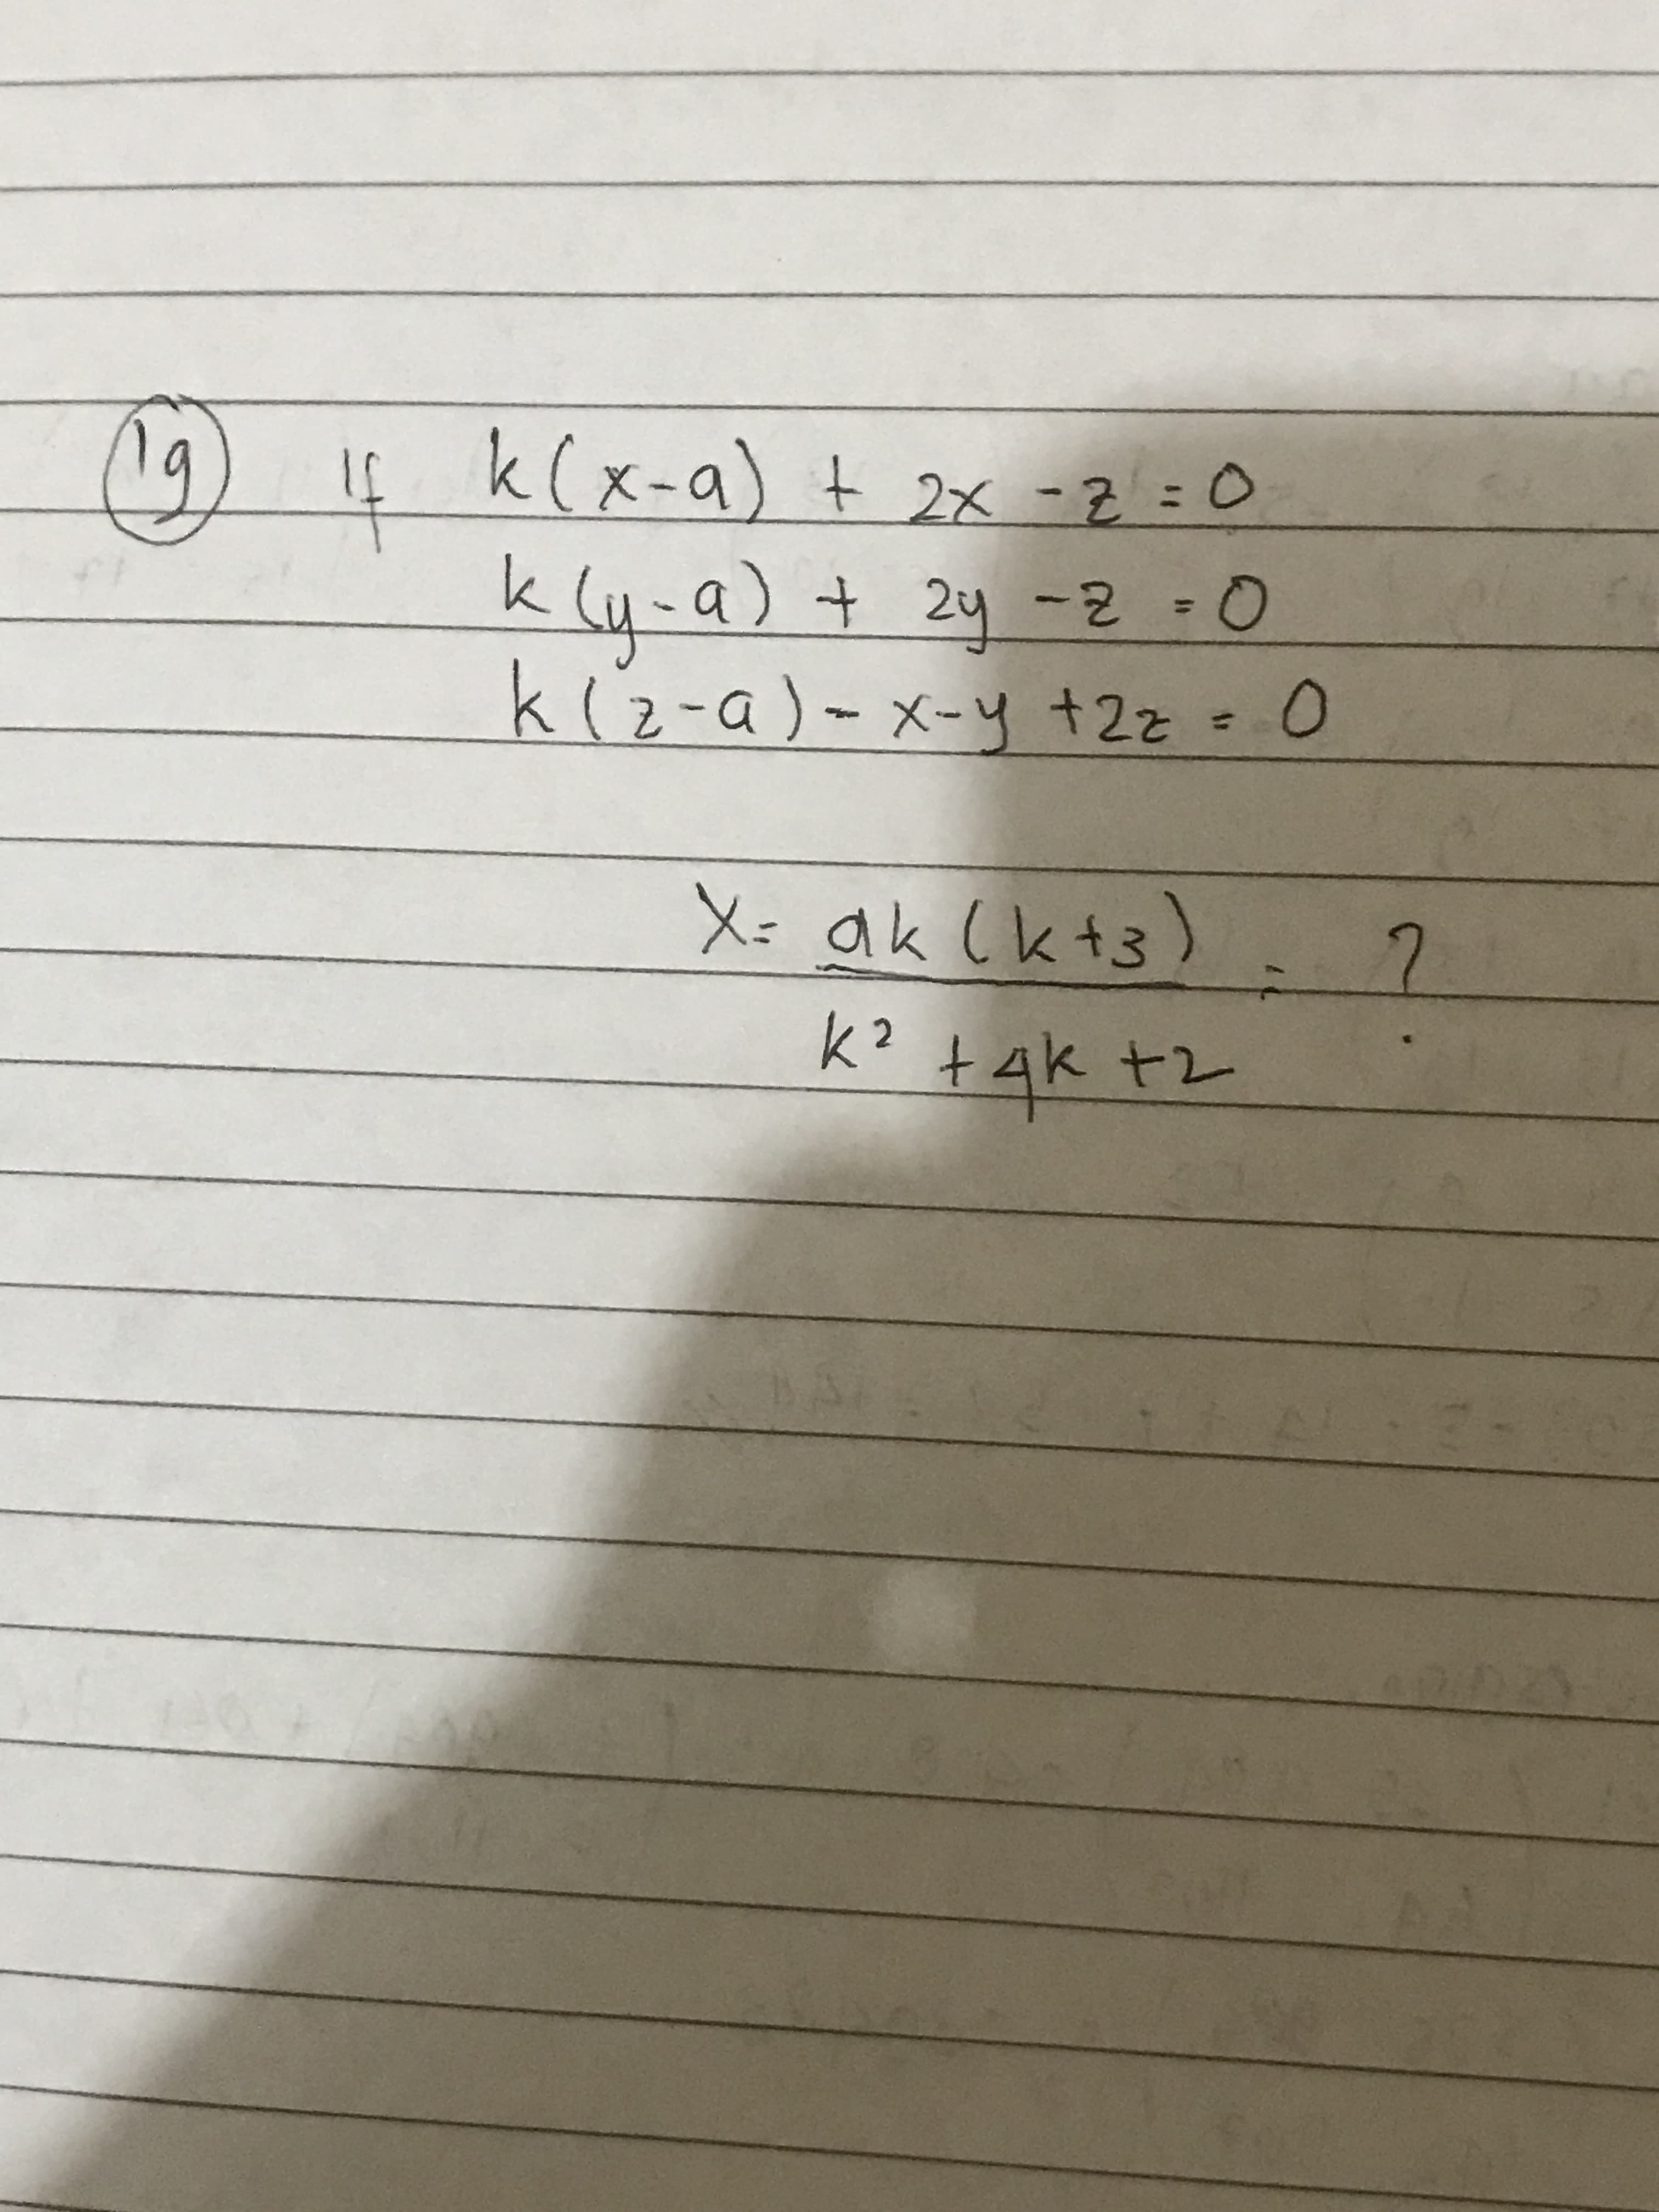 k(x-a) t 2x -2=0
%3D
Q- Z- hて +(b
%3D
k(2-a)-x-y +2z= 0
X: ak (k+3)
k? +Ak +2
